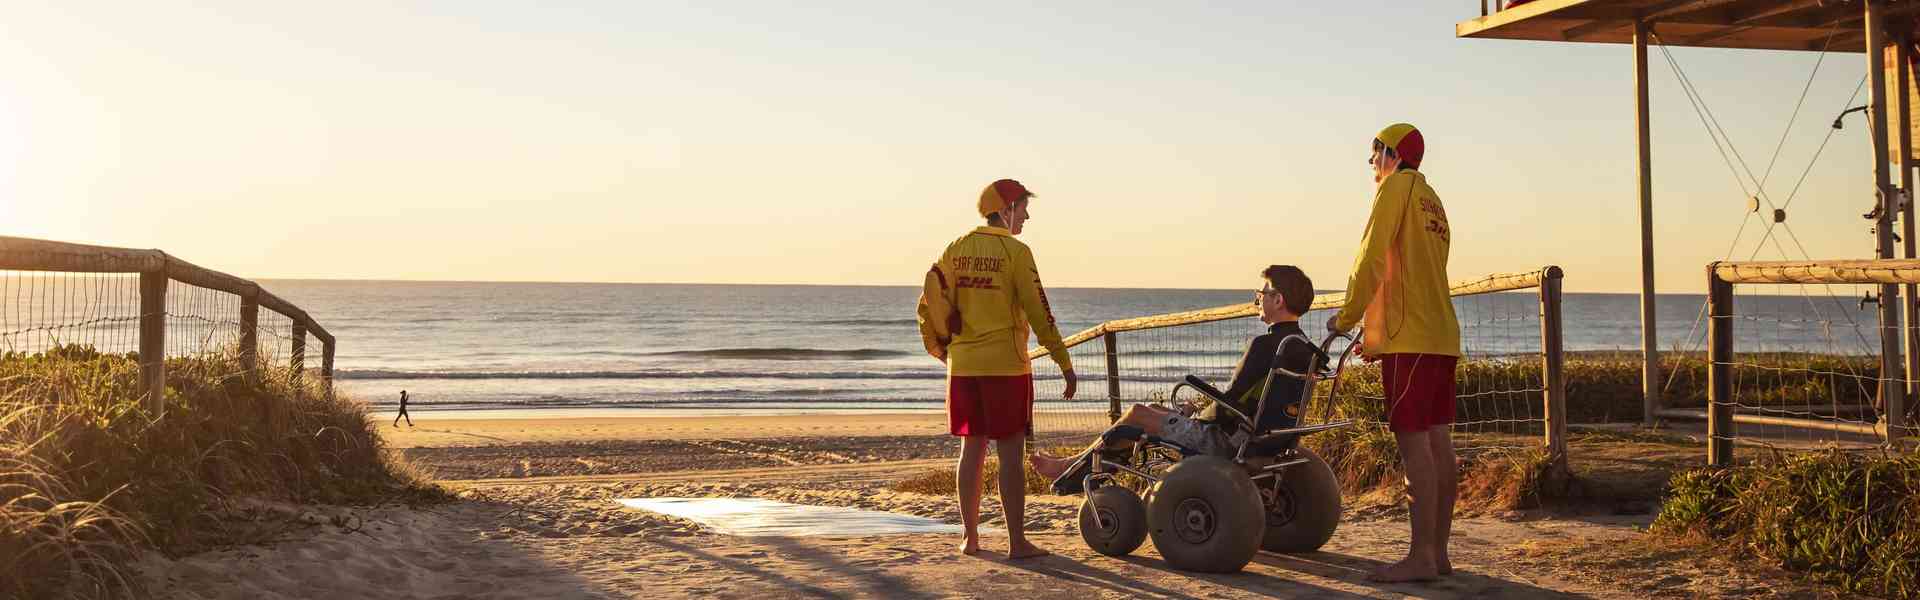 Wheelchair accessible beach